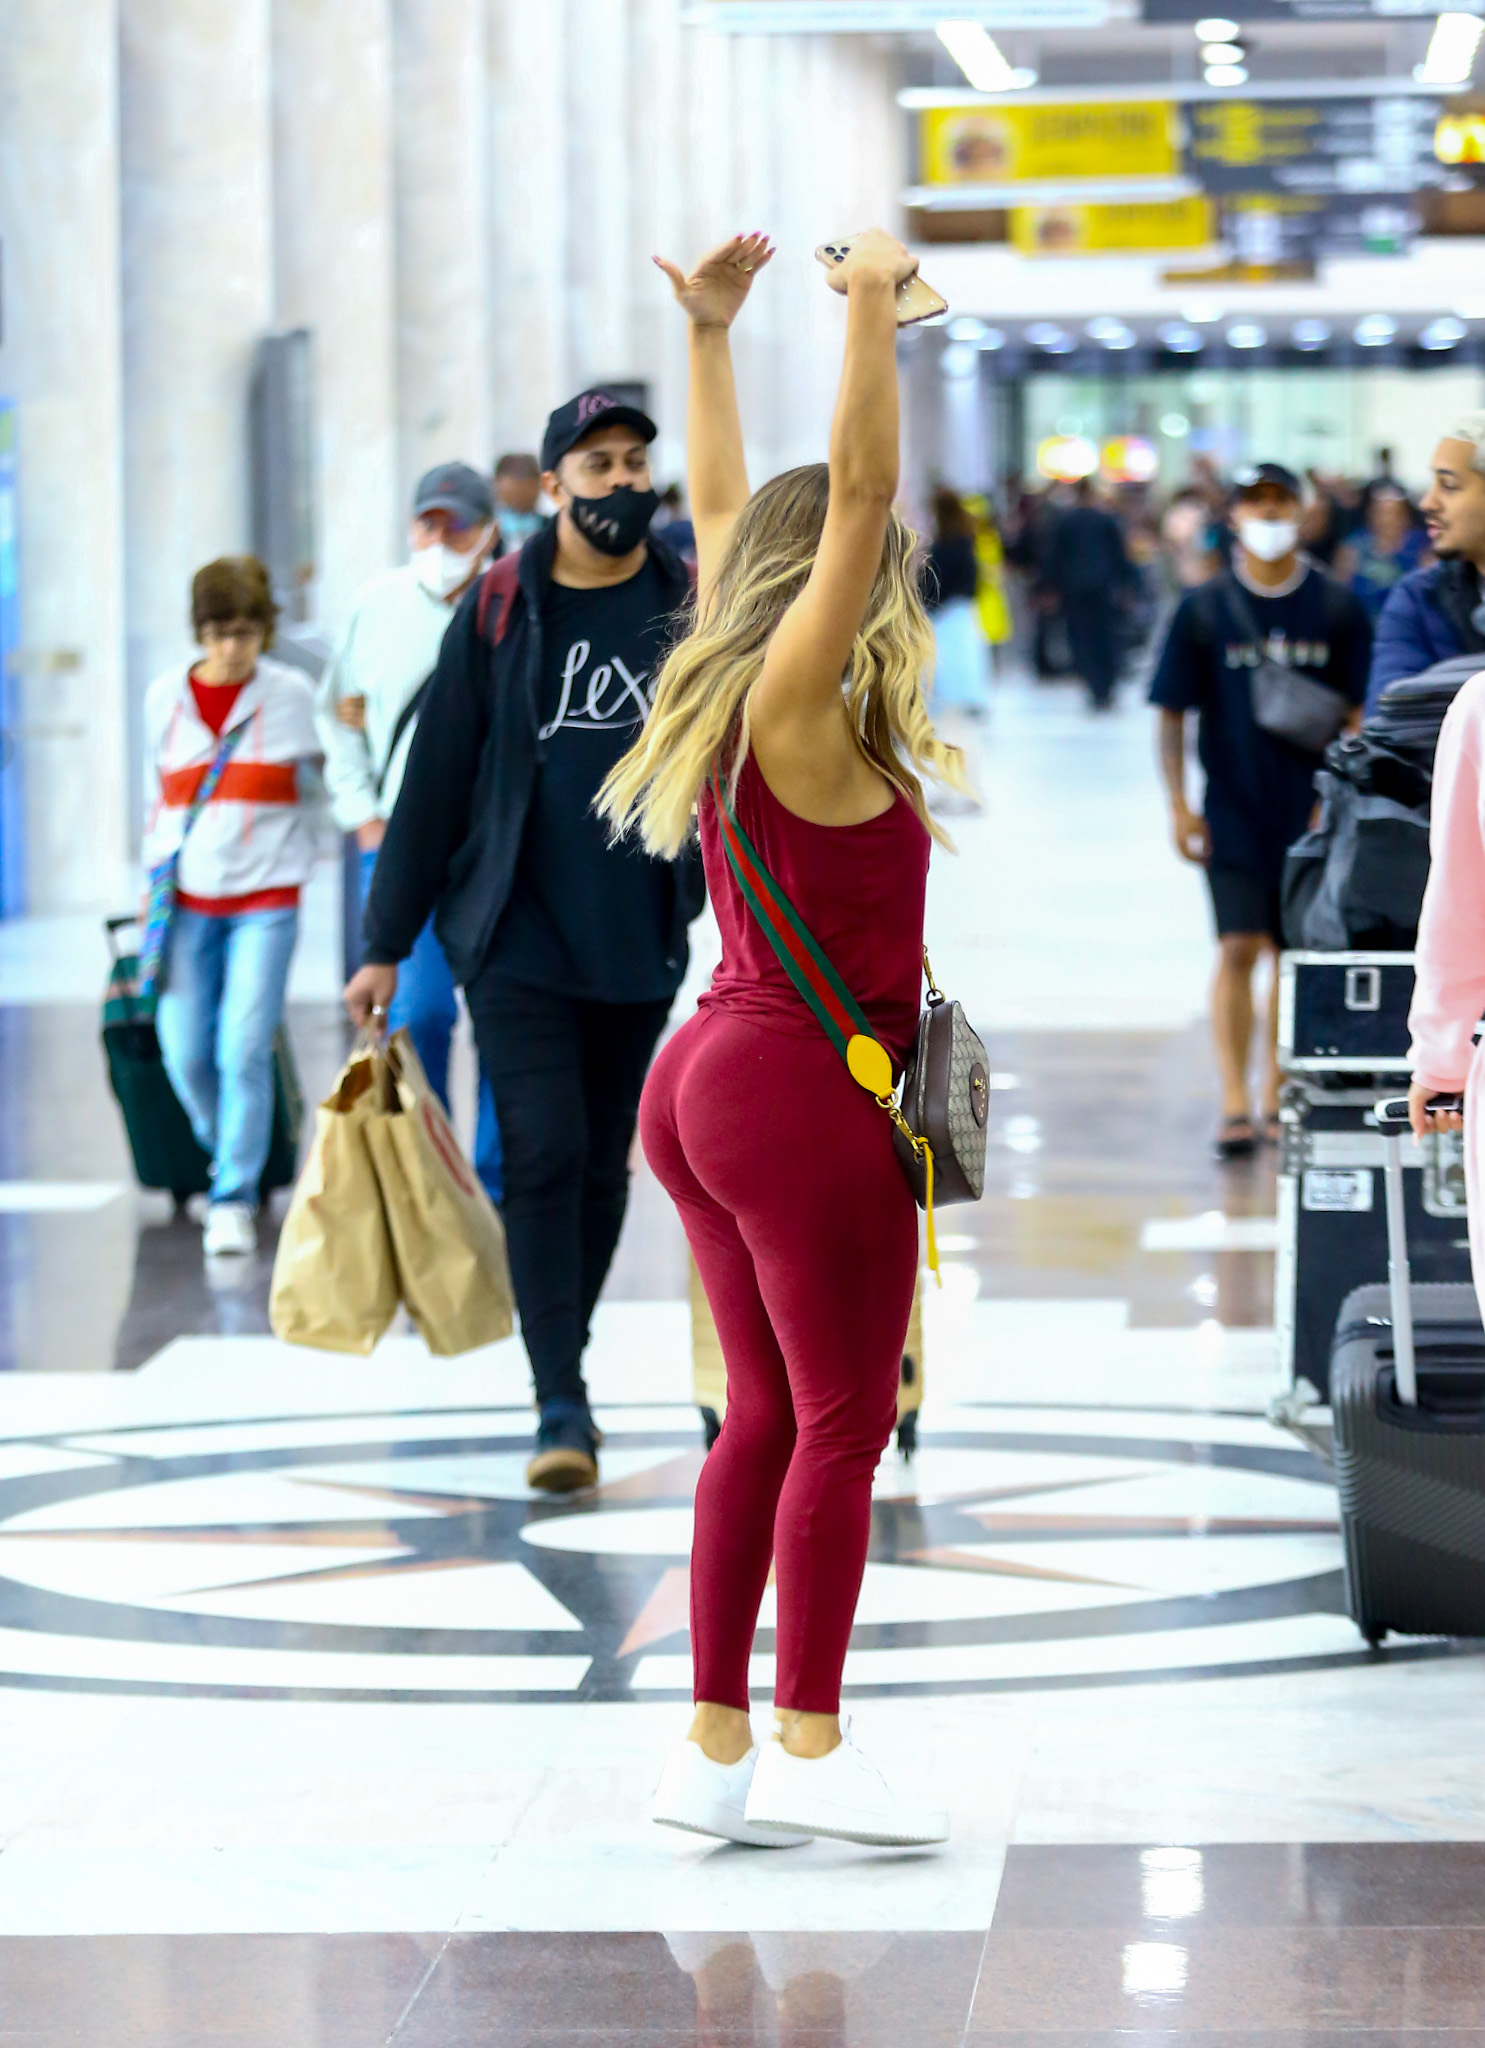 Foto de Lexa no aeroporto com um conjunto de legging e top cor de vinho, usando máscara e fazendo um passo de dança